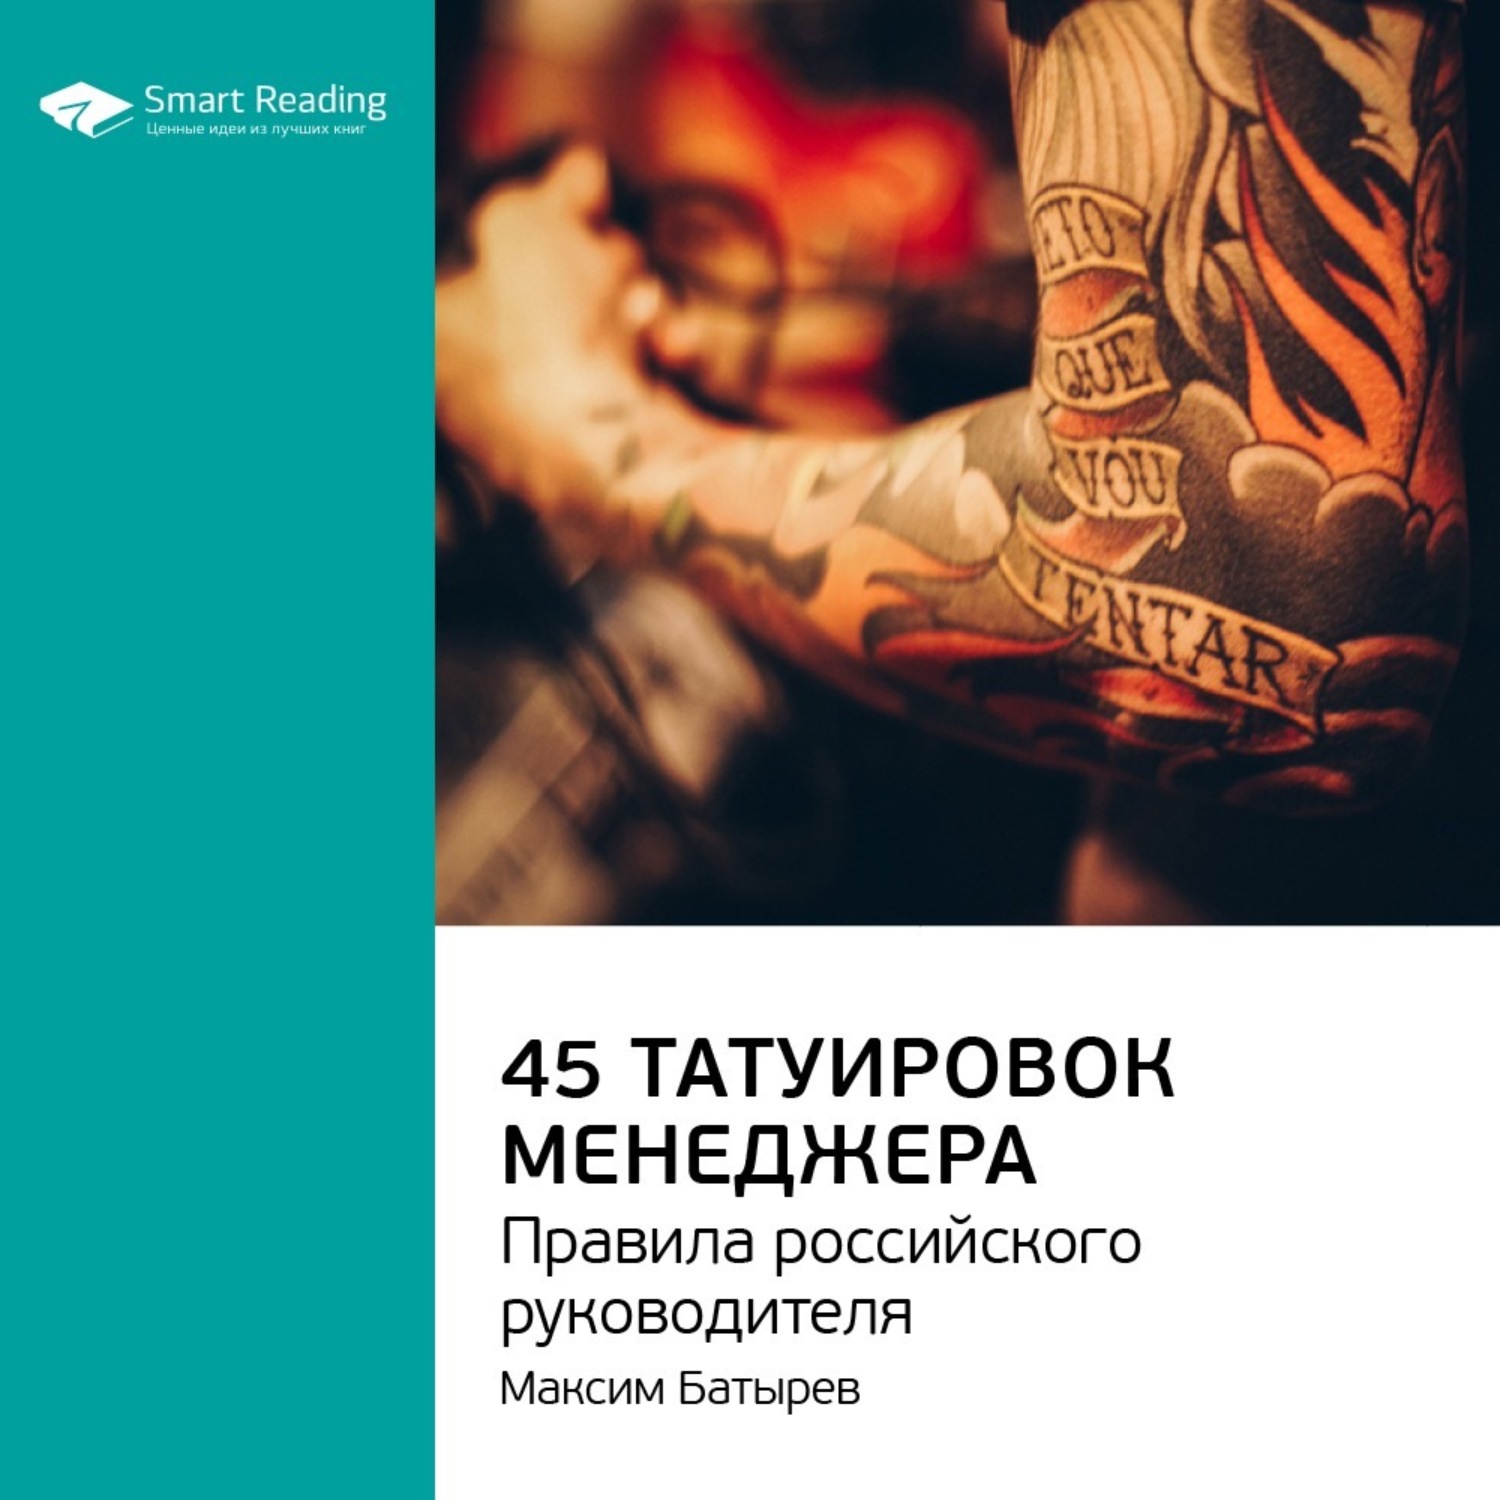 Максим Батырев с книгой 45 татуировок